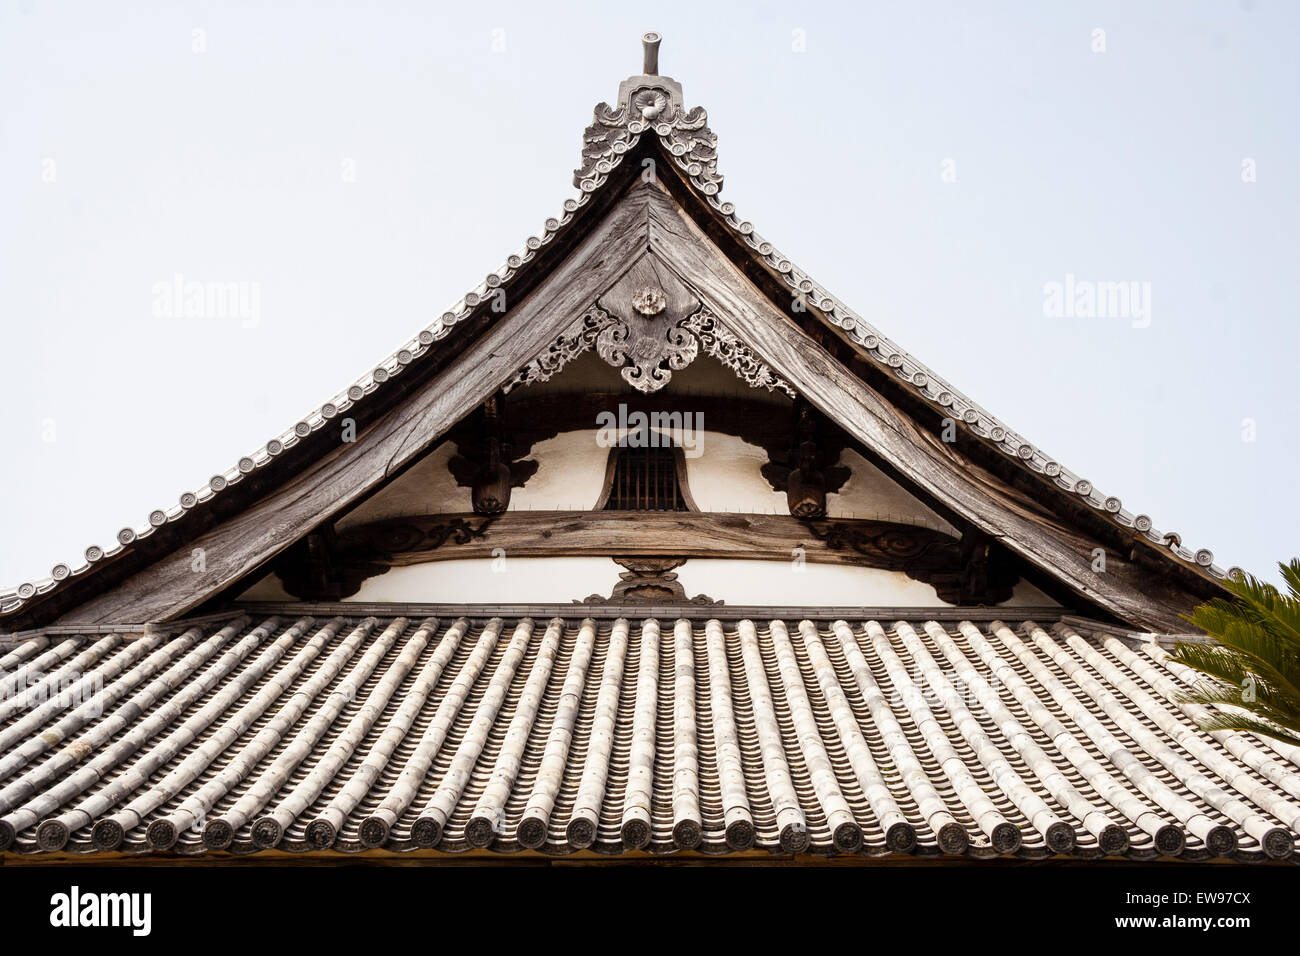 Santuario giapponese dettaglio del tetto. Fine ogf gable mostra gli ornati gegyo che unisce i due tratti curvati hafuita travi di sostegno del tetto. Komyo-ji. Foto Stock